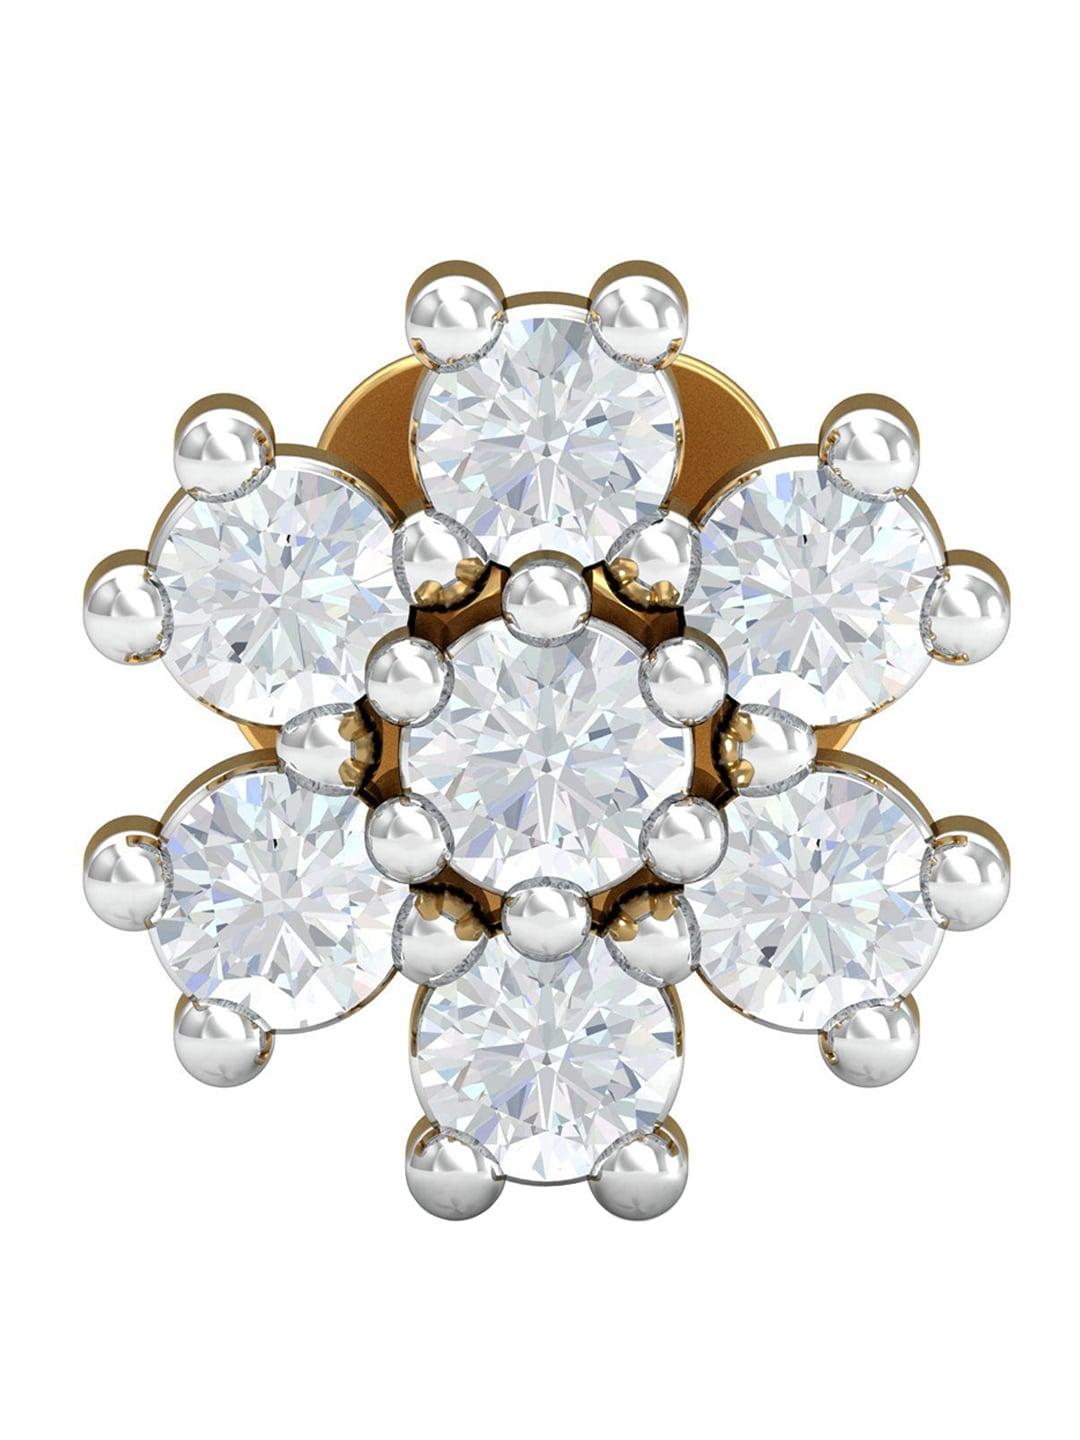 KUBERBOX Saakya 18KT Gold Diamond-Studded Nose Pin-0.48gm